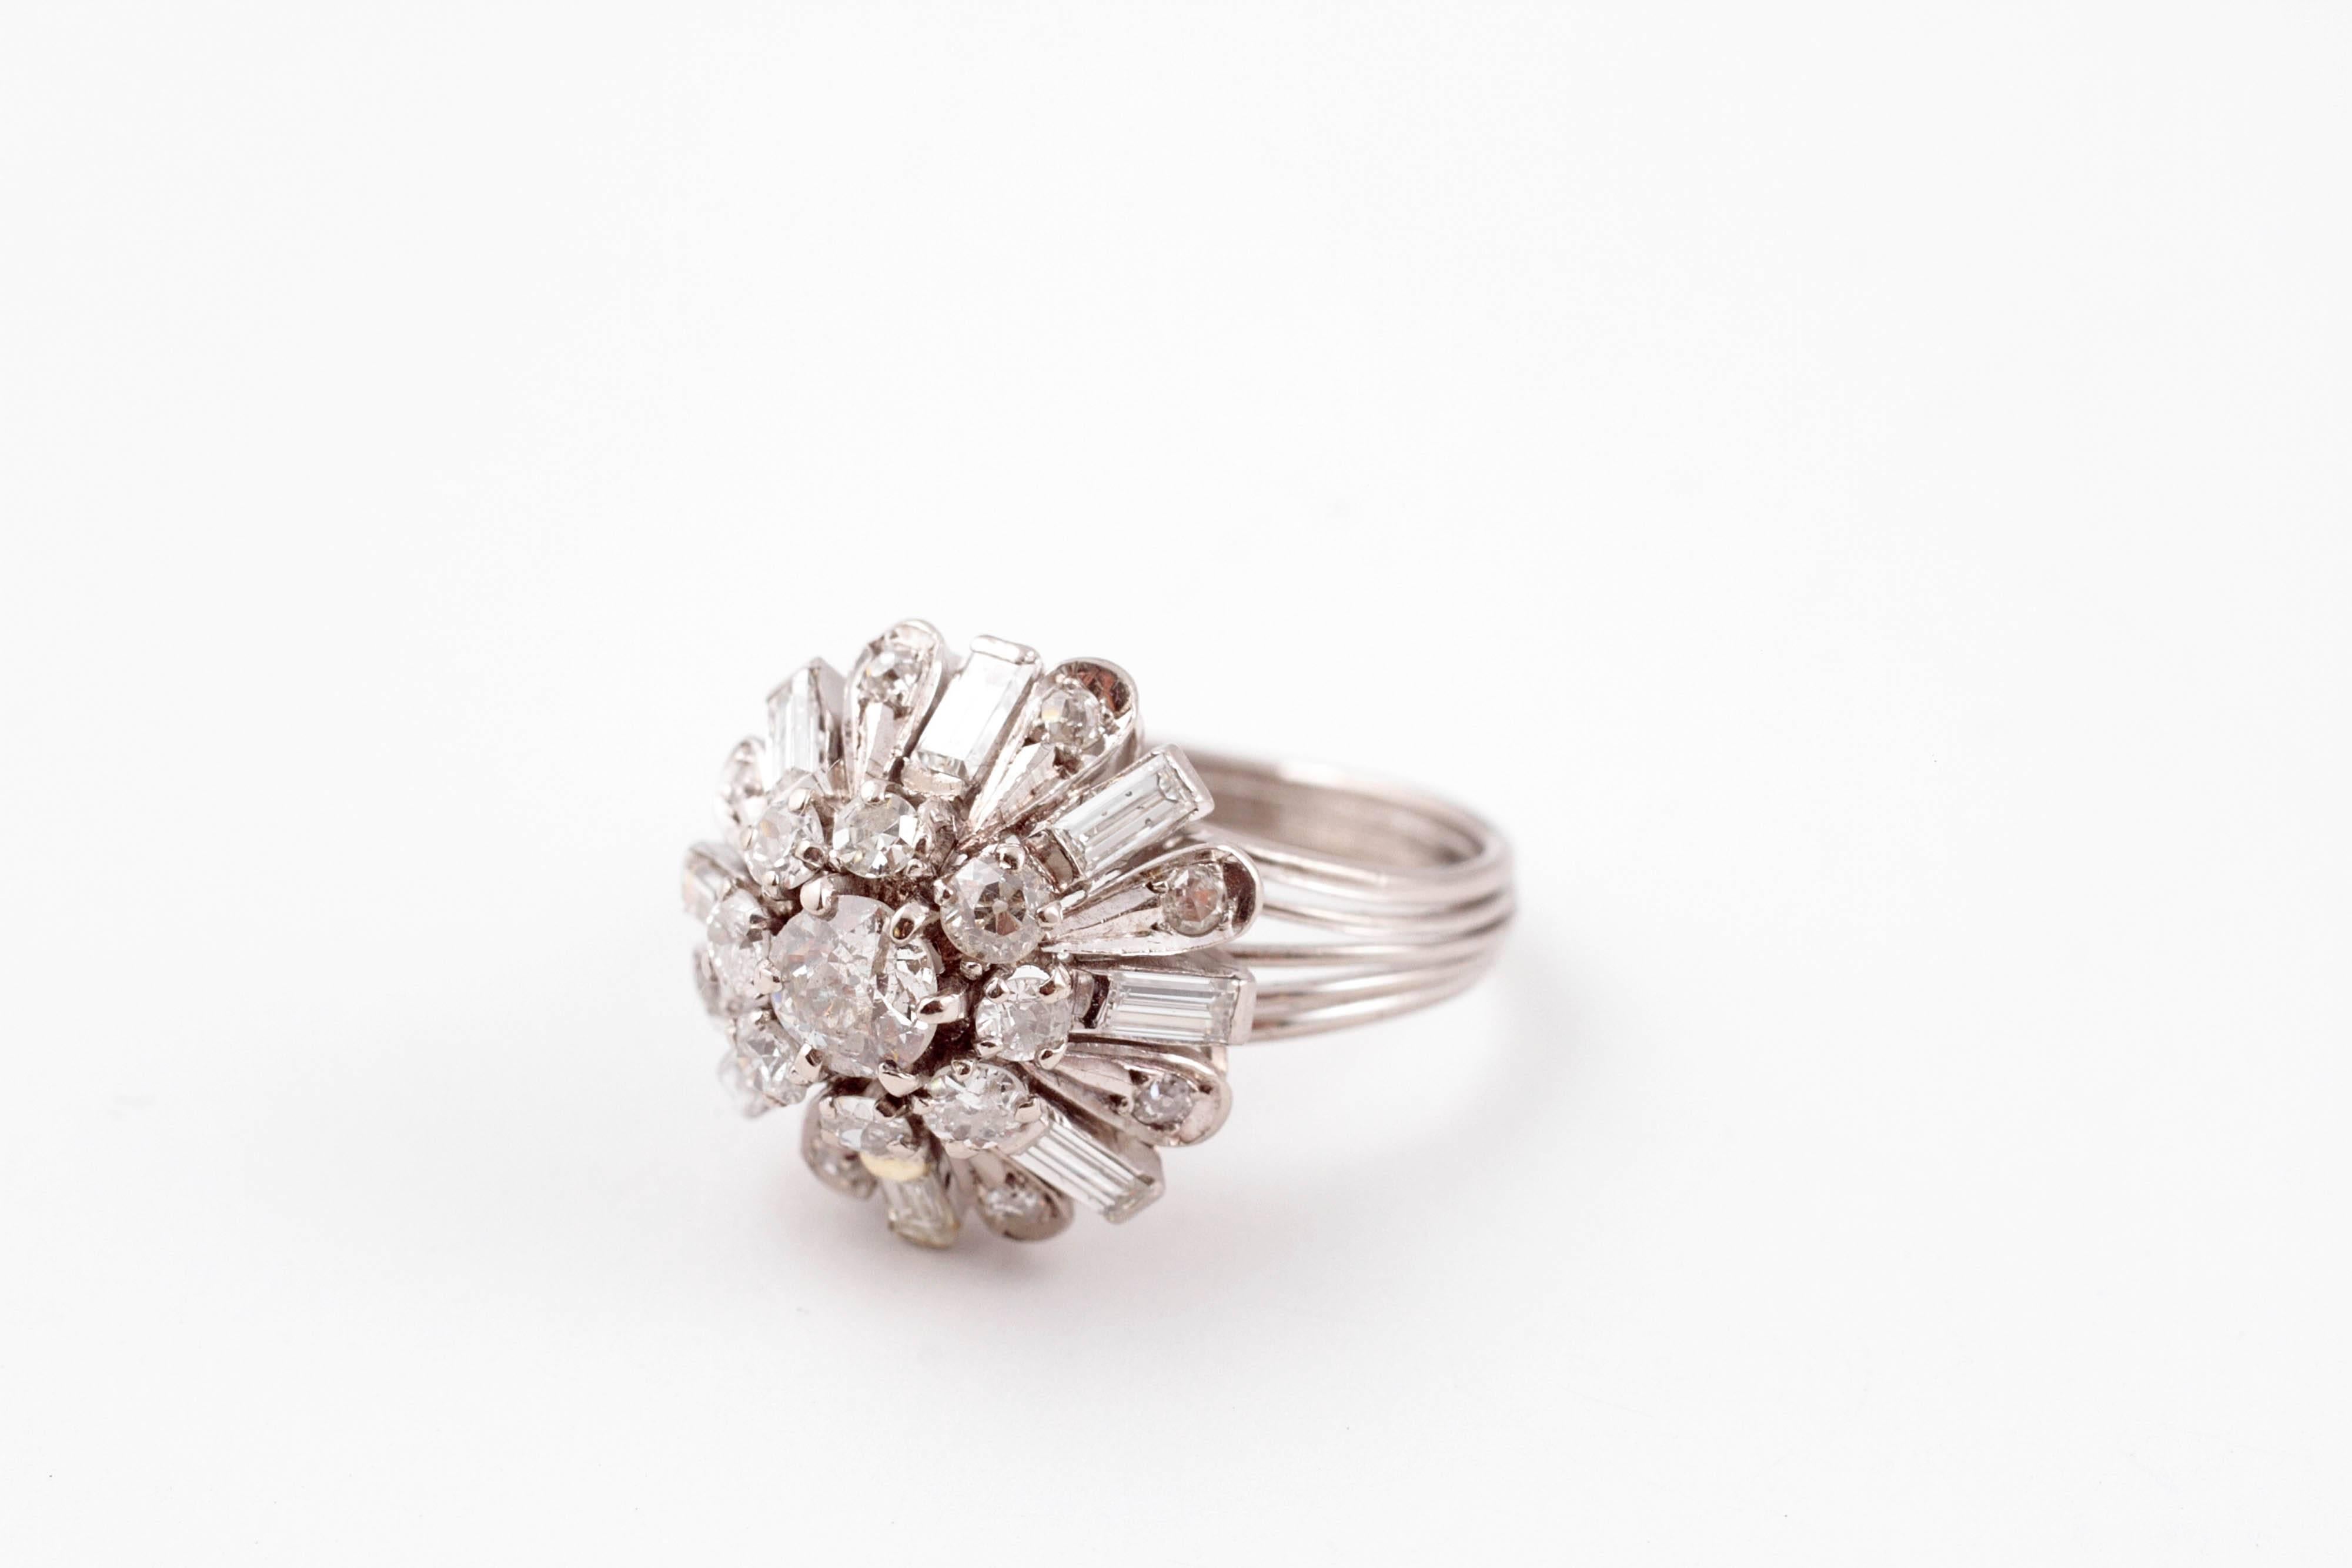 2 carat diamond ring in 14 karat white gold.  Size 6 3/4.